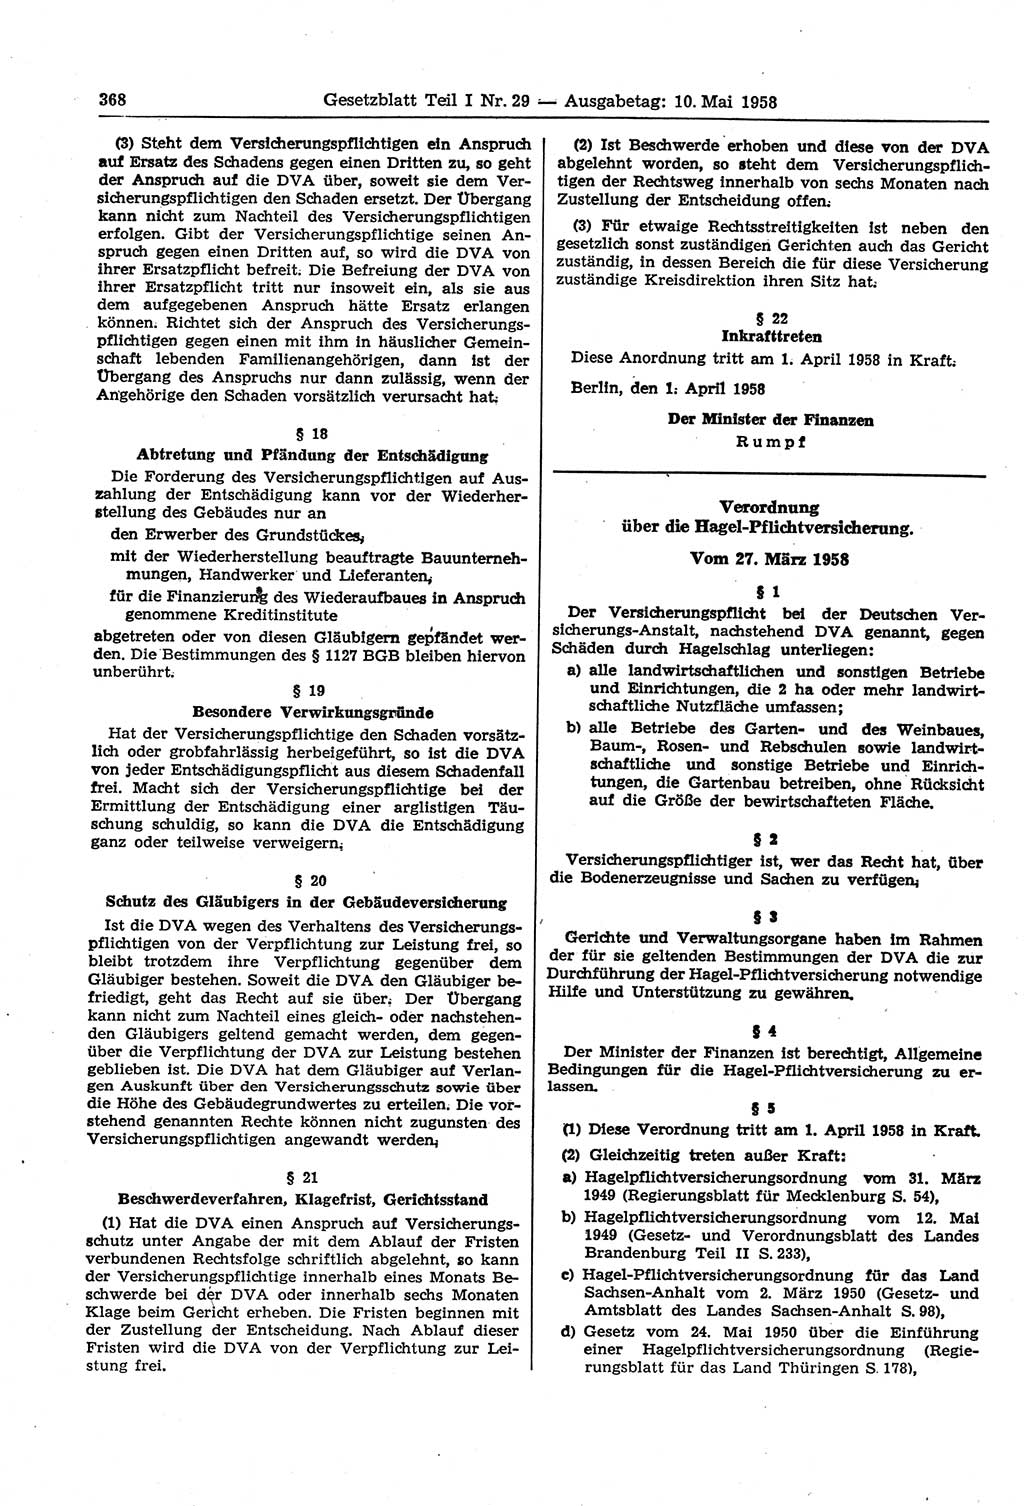 Gesetzblatt (GBl.) der Deutschen Demokratischen Republik (DDR) Teil Ⅰ 1958, Seite 368 (GBl. DDR Ⅰ 1958, S. 368)